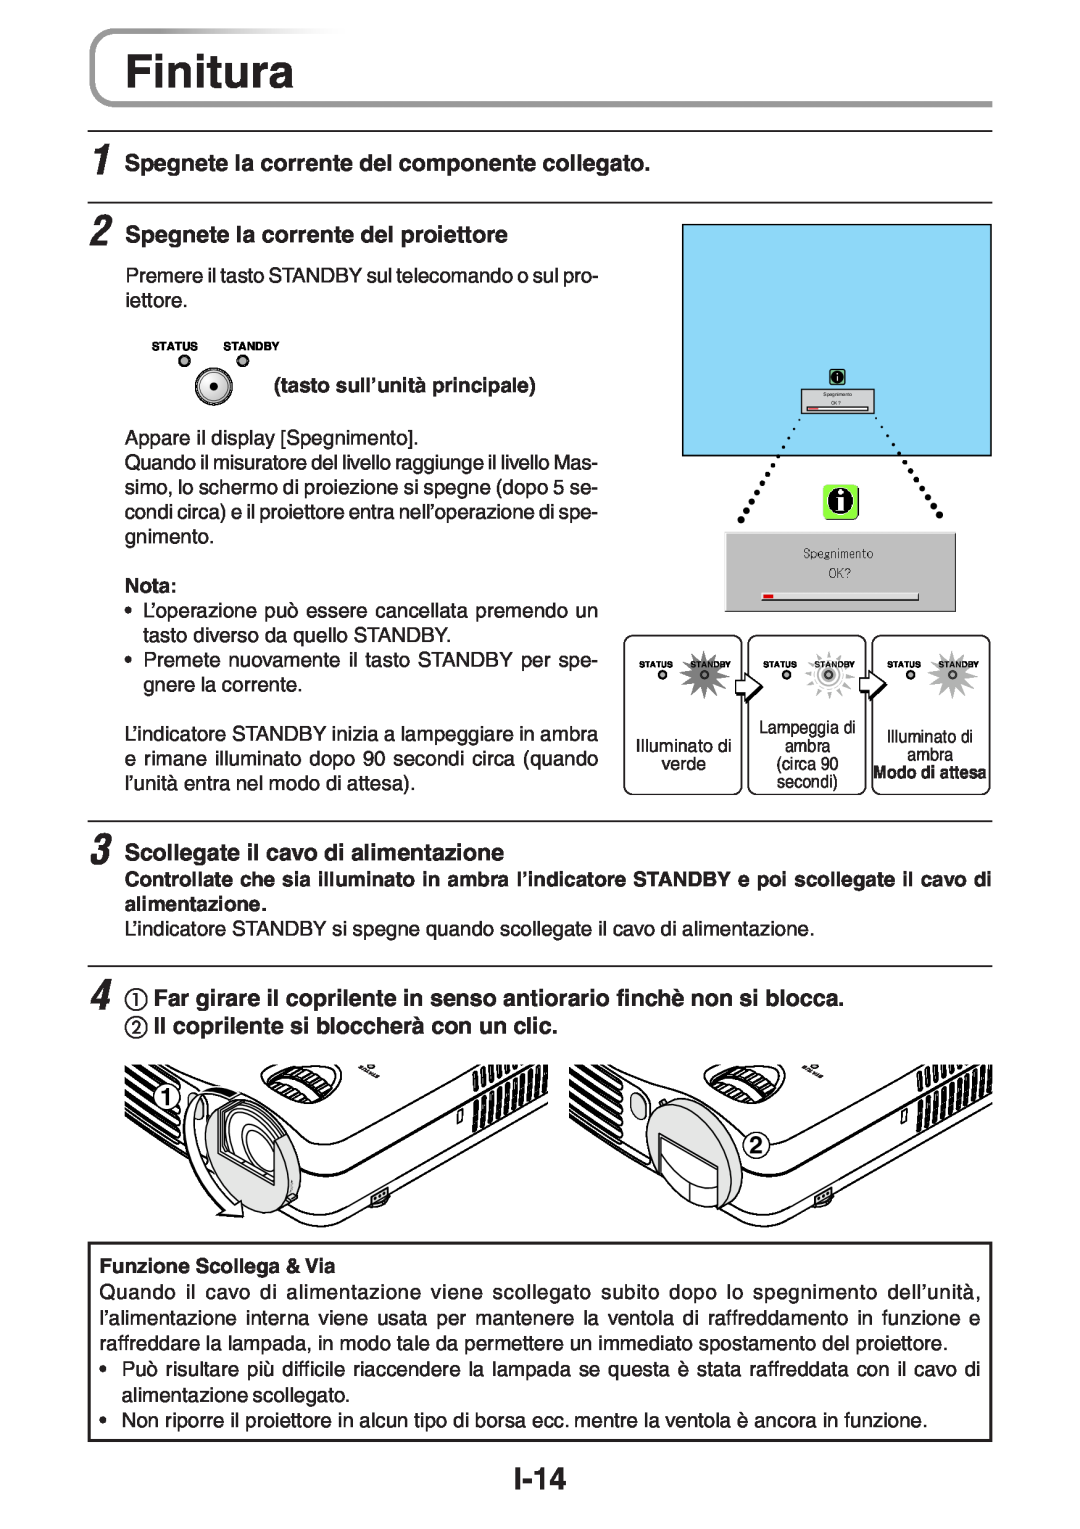 3M PX5 user manual Finitura, I-14, Spegnete la corrente del componente collegato, Spegnete la corrente del proiettore 